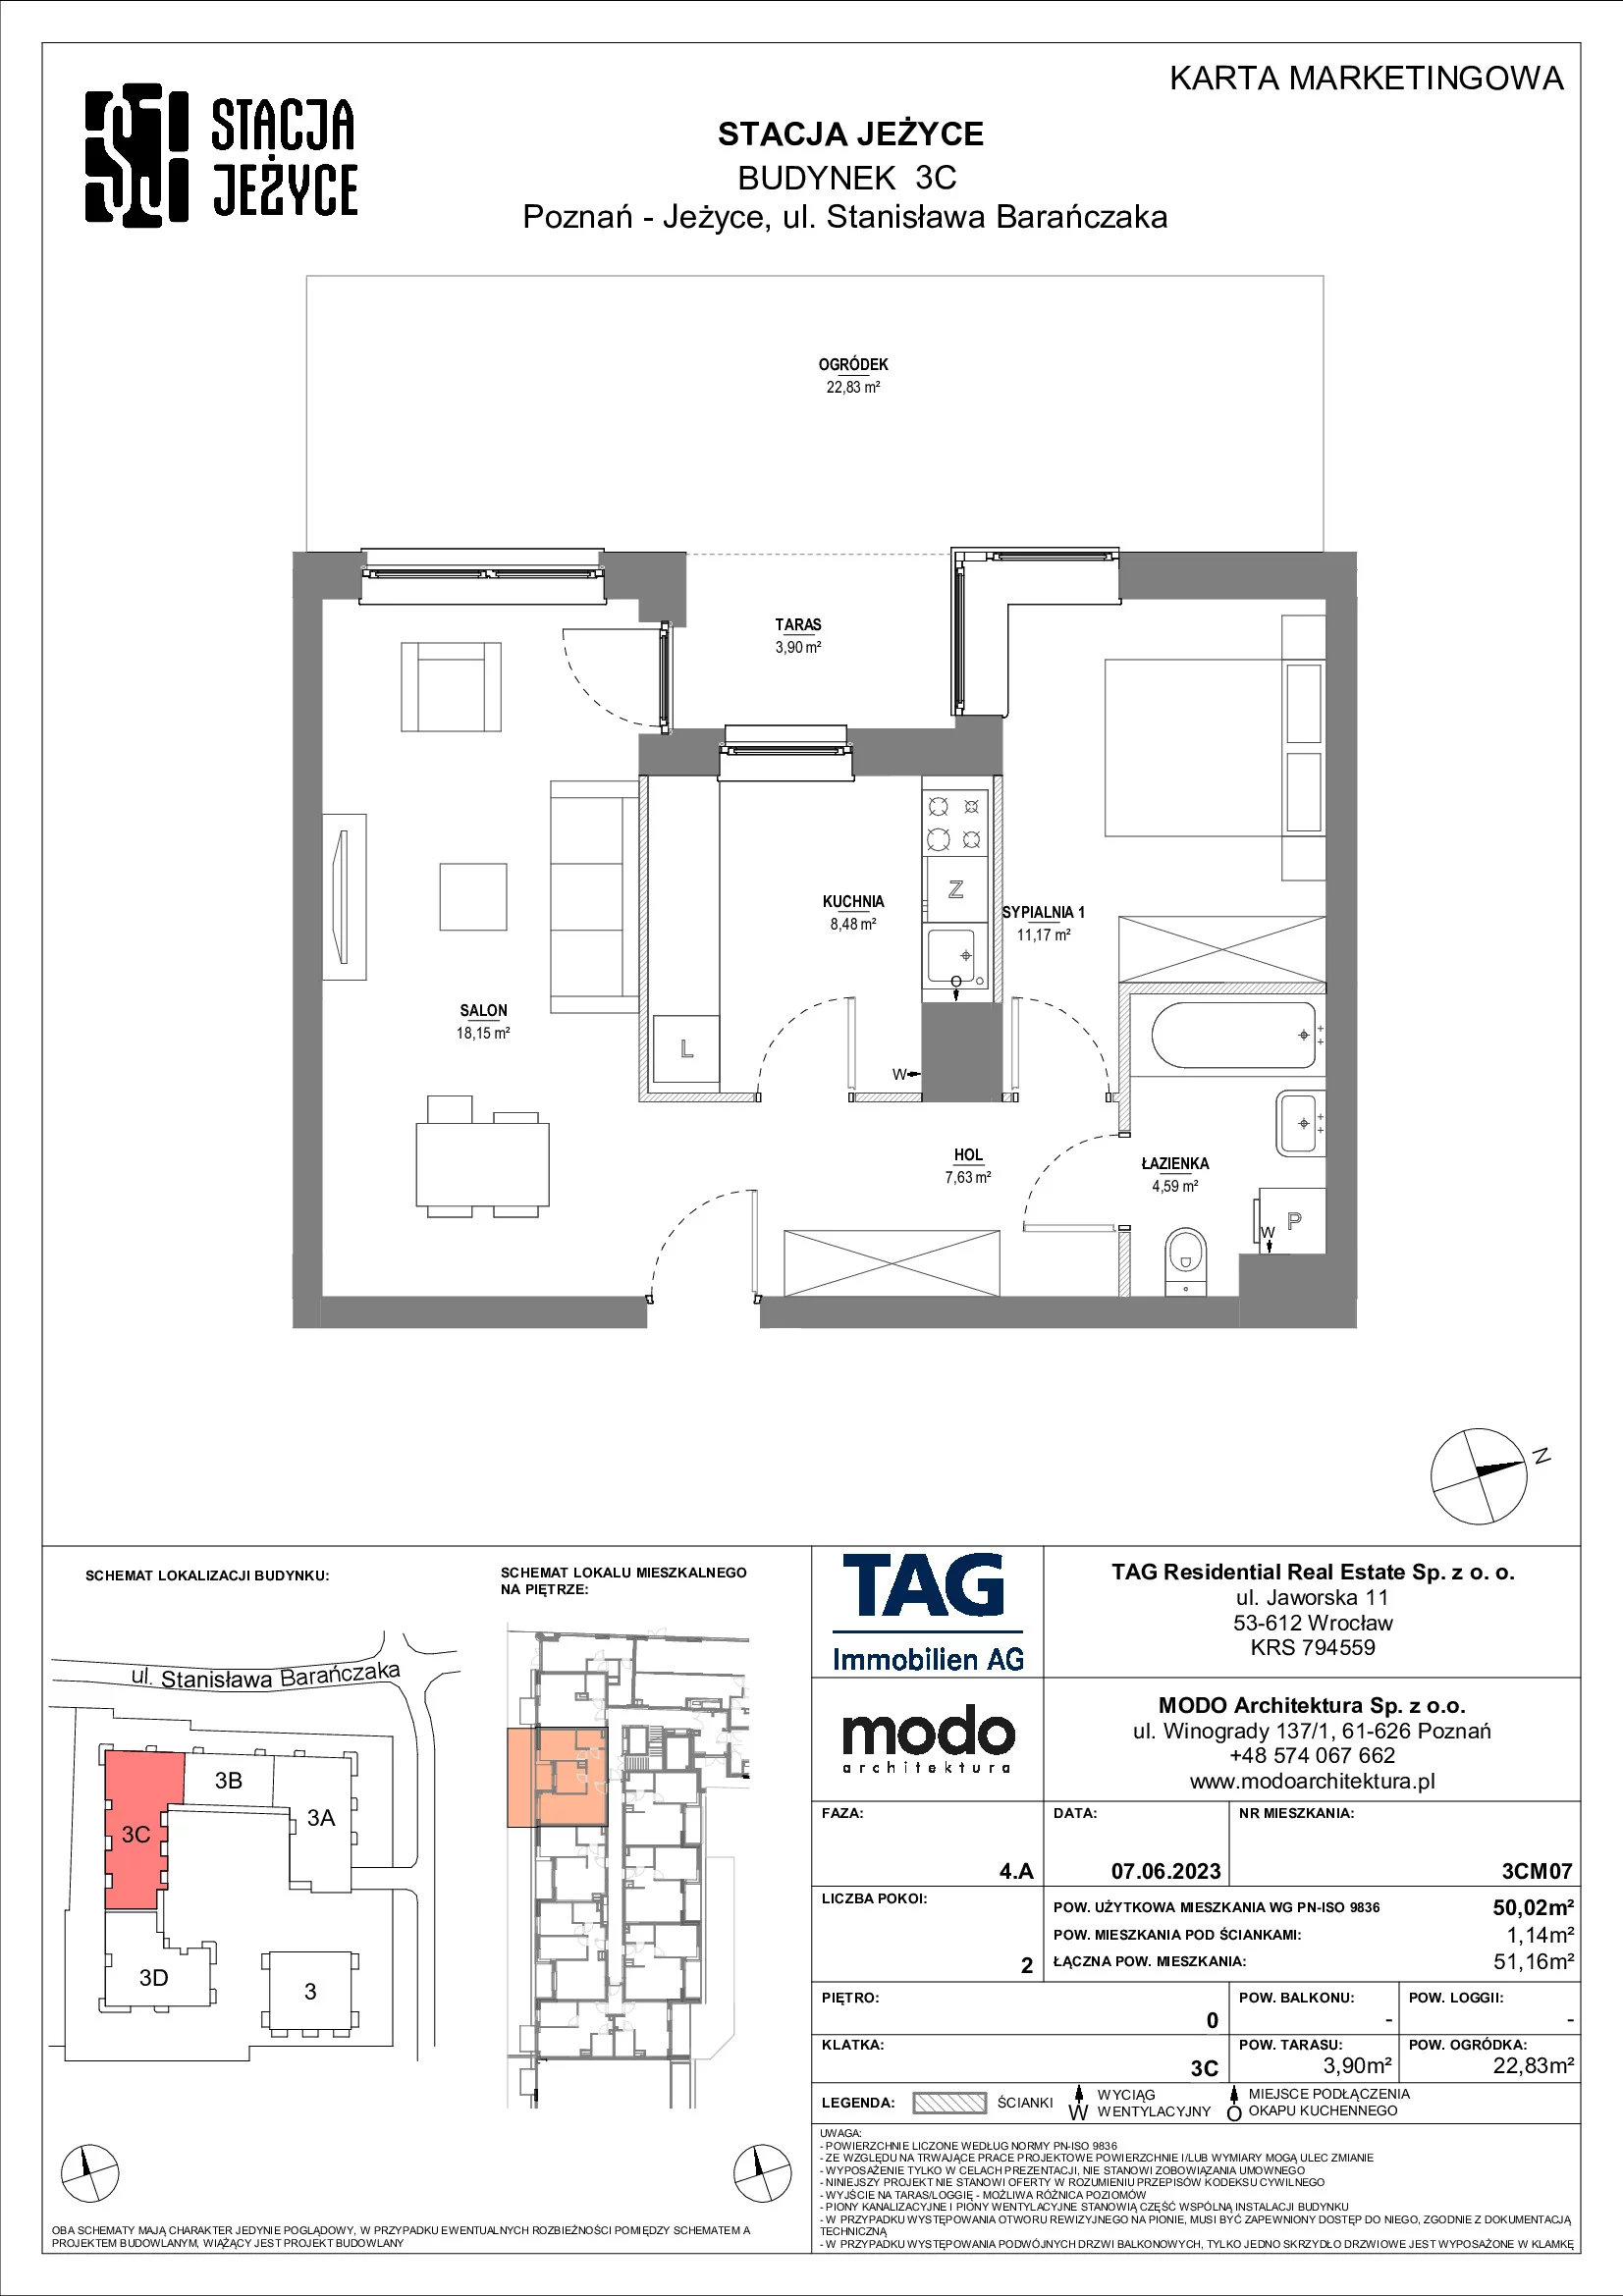 Mieszkanie 50,02 m², parter, oferta nr 3CM07, Stacja Jeżyce, Poznań, Jeżyce, Jeżyce, ul. Stanisława Barańczaka 3